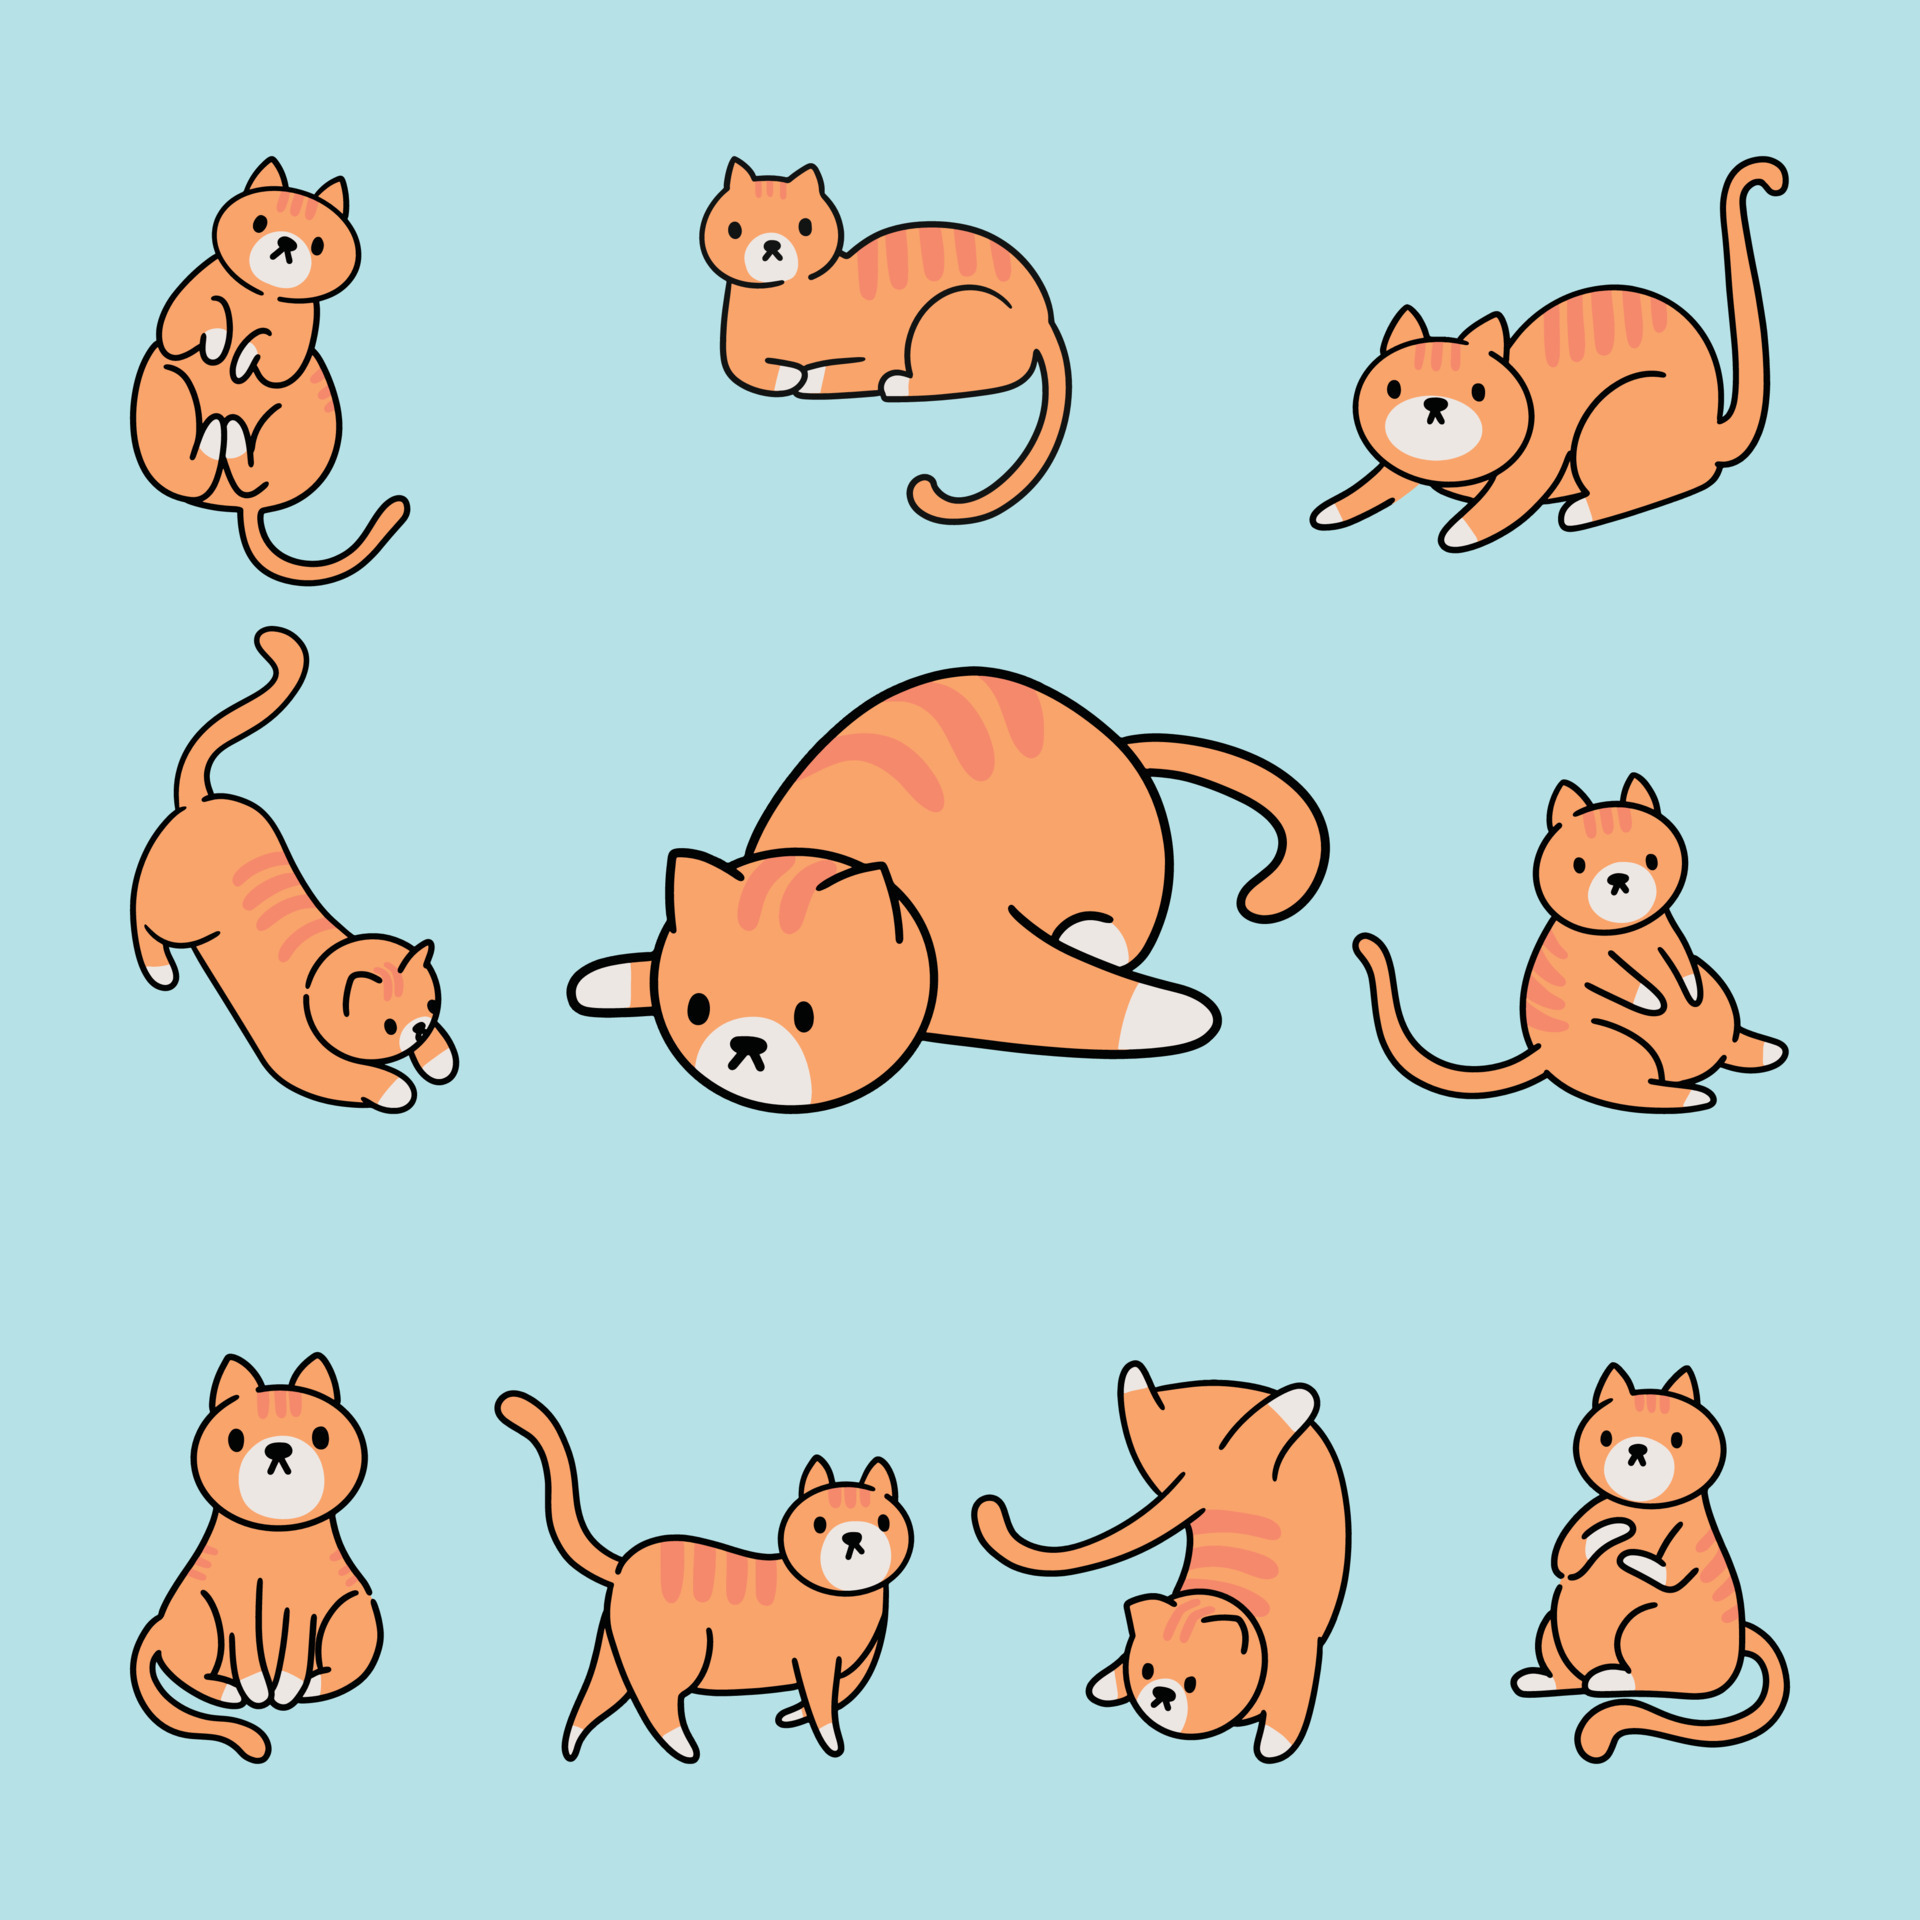 21 Most Popular Cat Cartoon Characters  CartoonVibecom